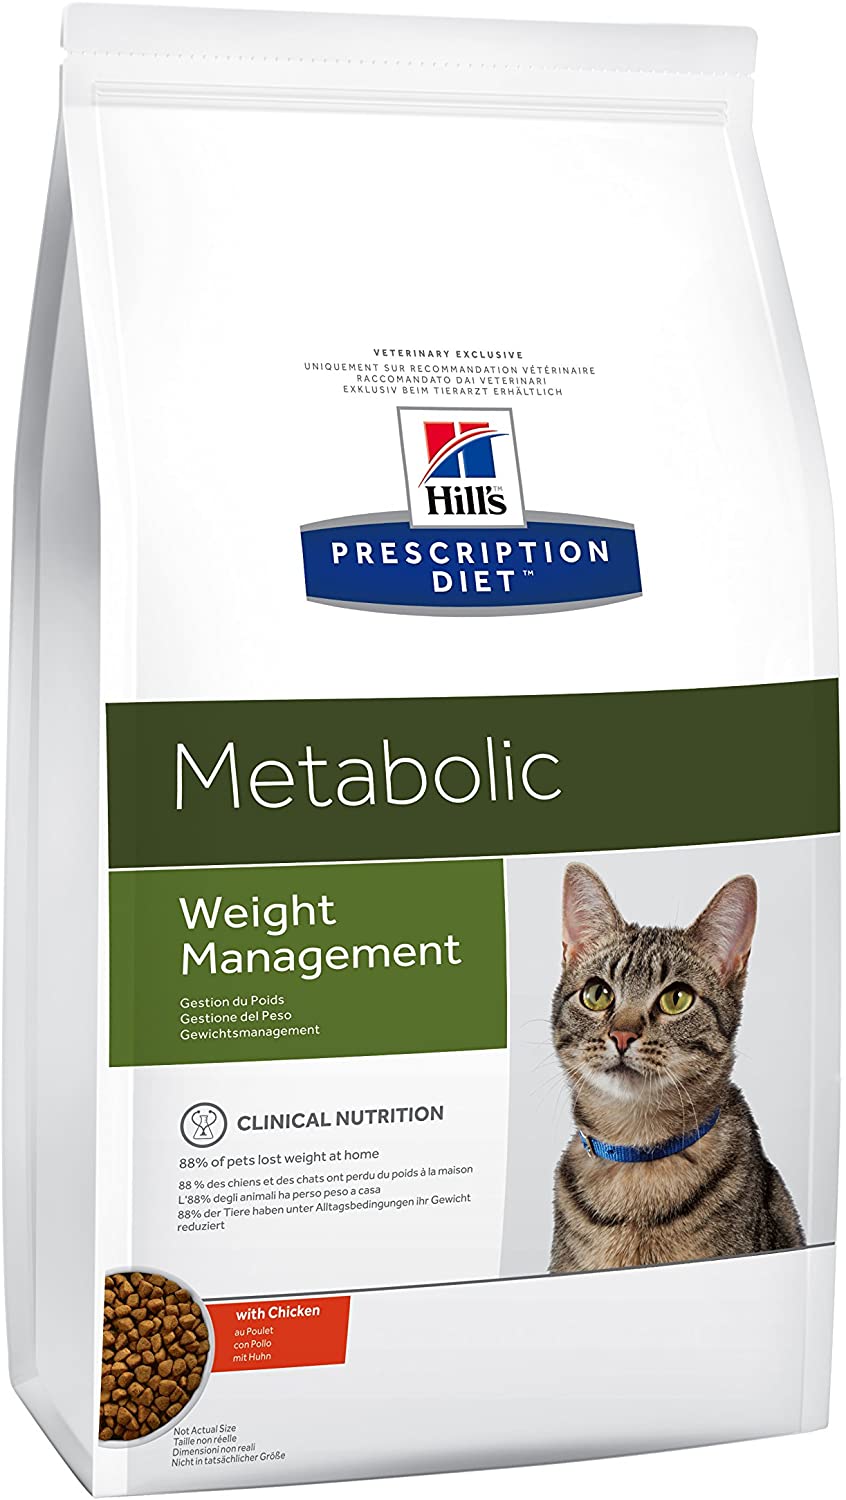  Hill`s Alimento Dietético para Gato Metabolic - 1.5 kg - 2 Paquetes de 1500 gr - Totale: 3000 gr 